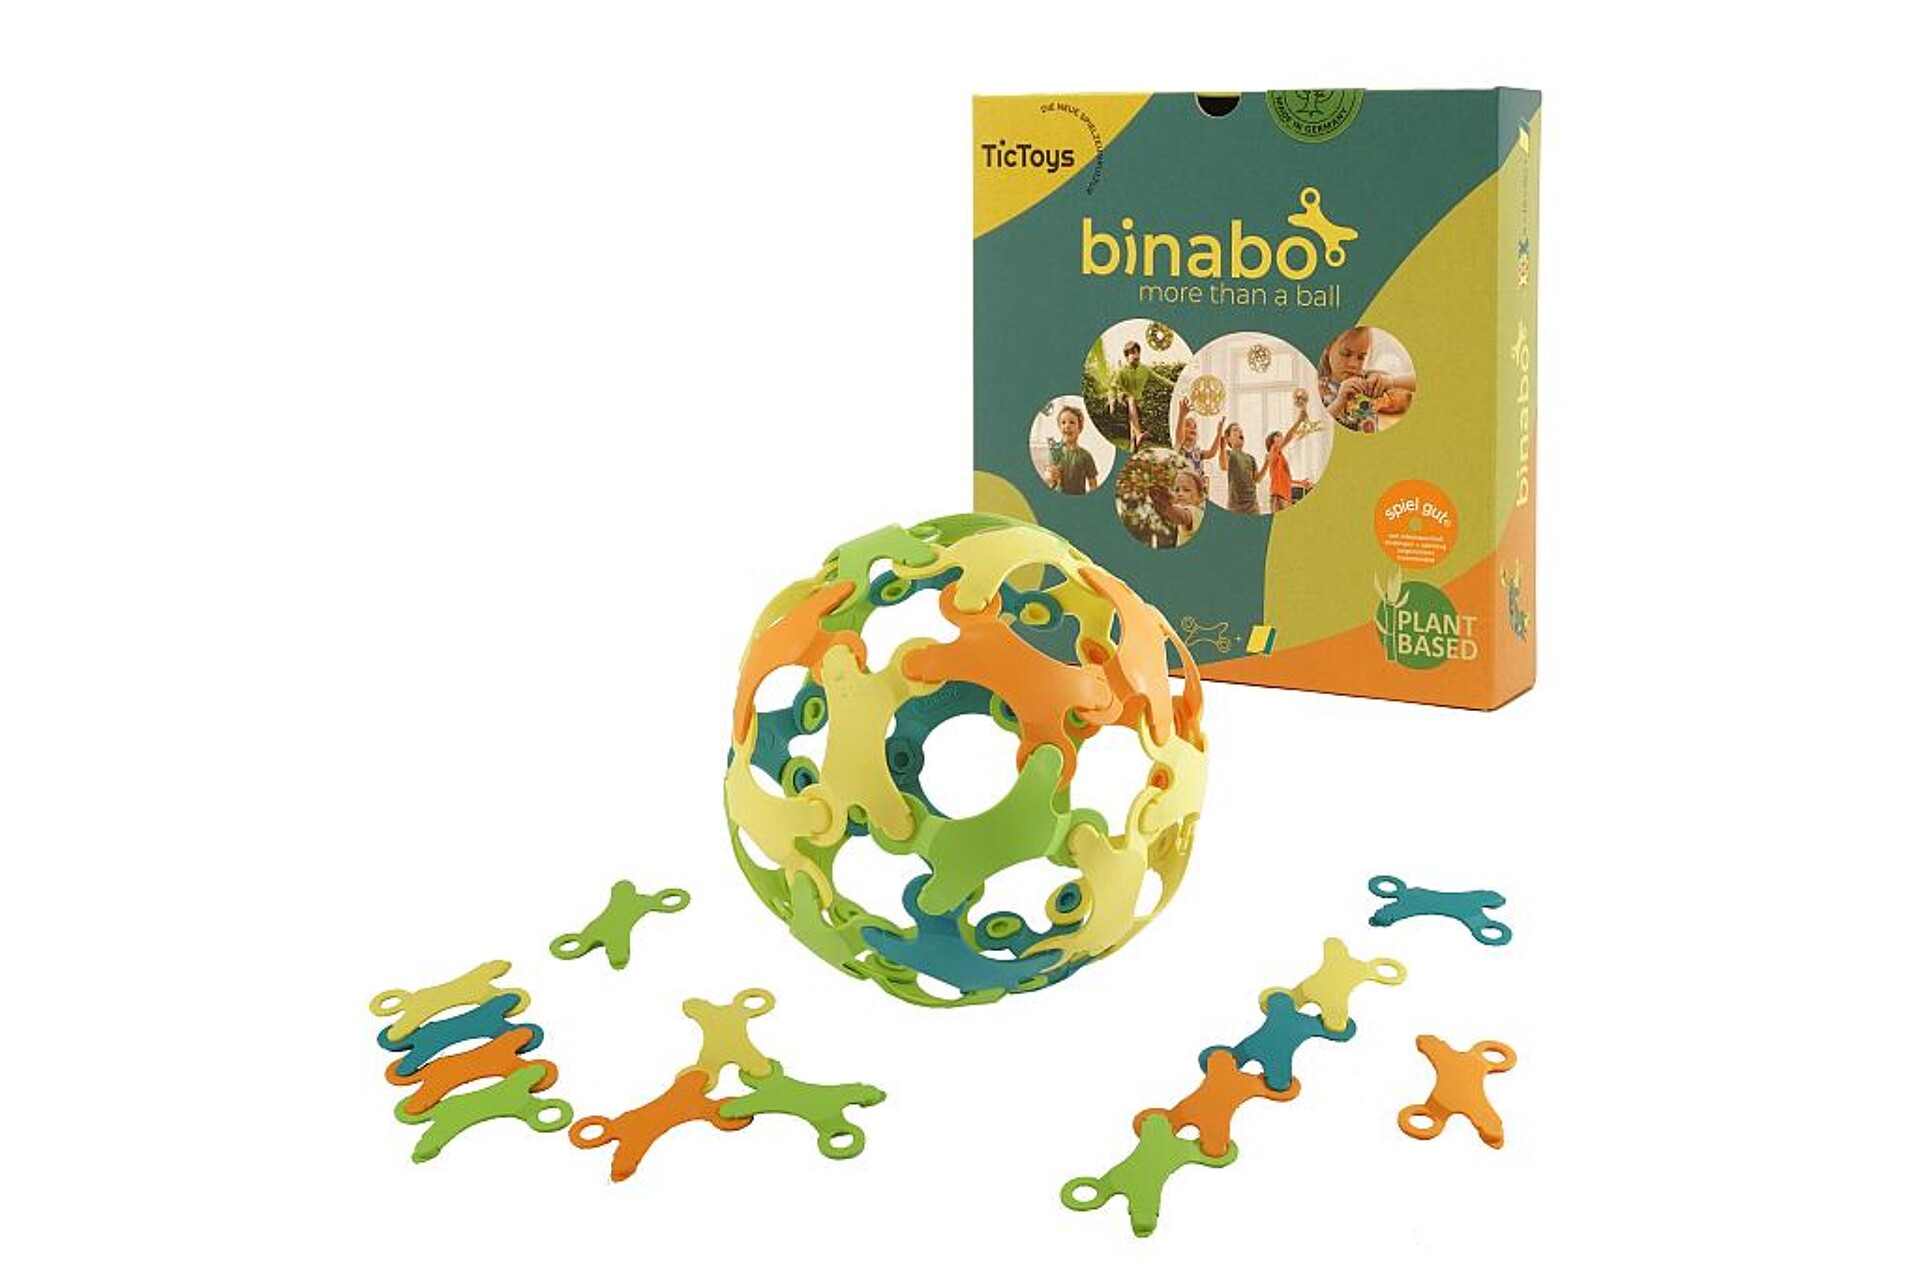 Binabo 2.0 aus nachwachsendem, recycelbarem Biokunststoff von FKuR. (Foto: TicToys GmbH)